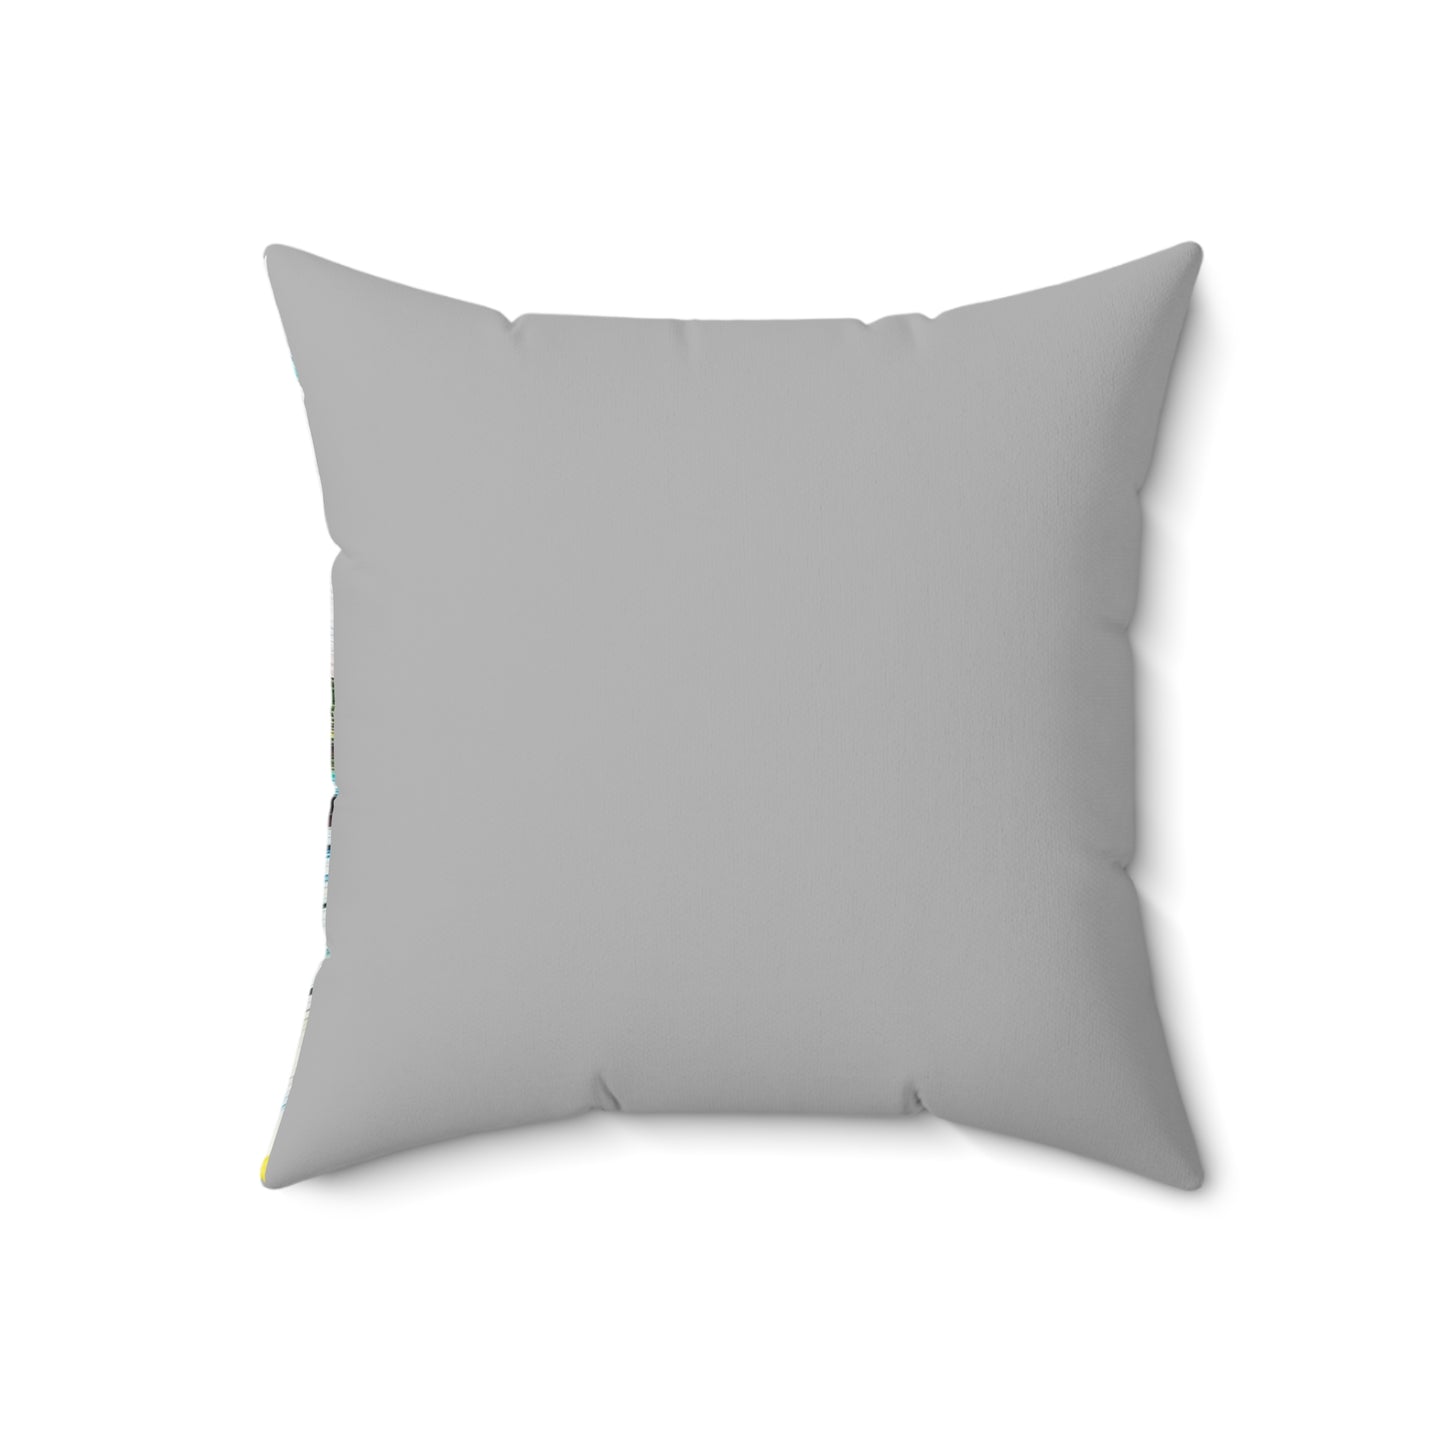 Indoor decorative cushion- Dumbarton Castle